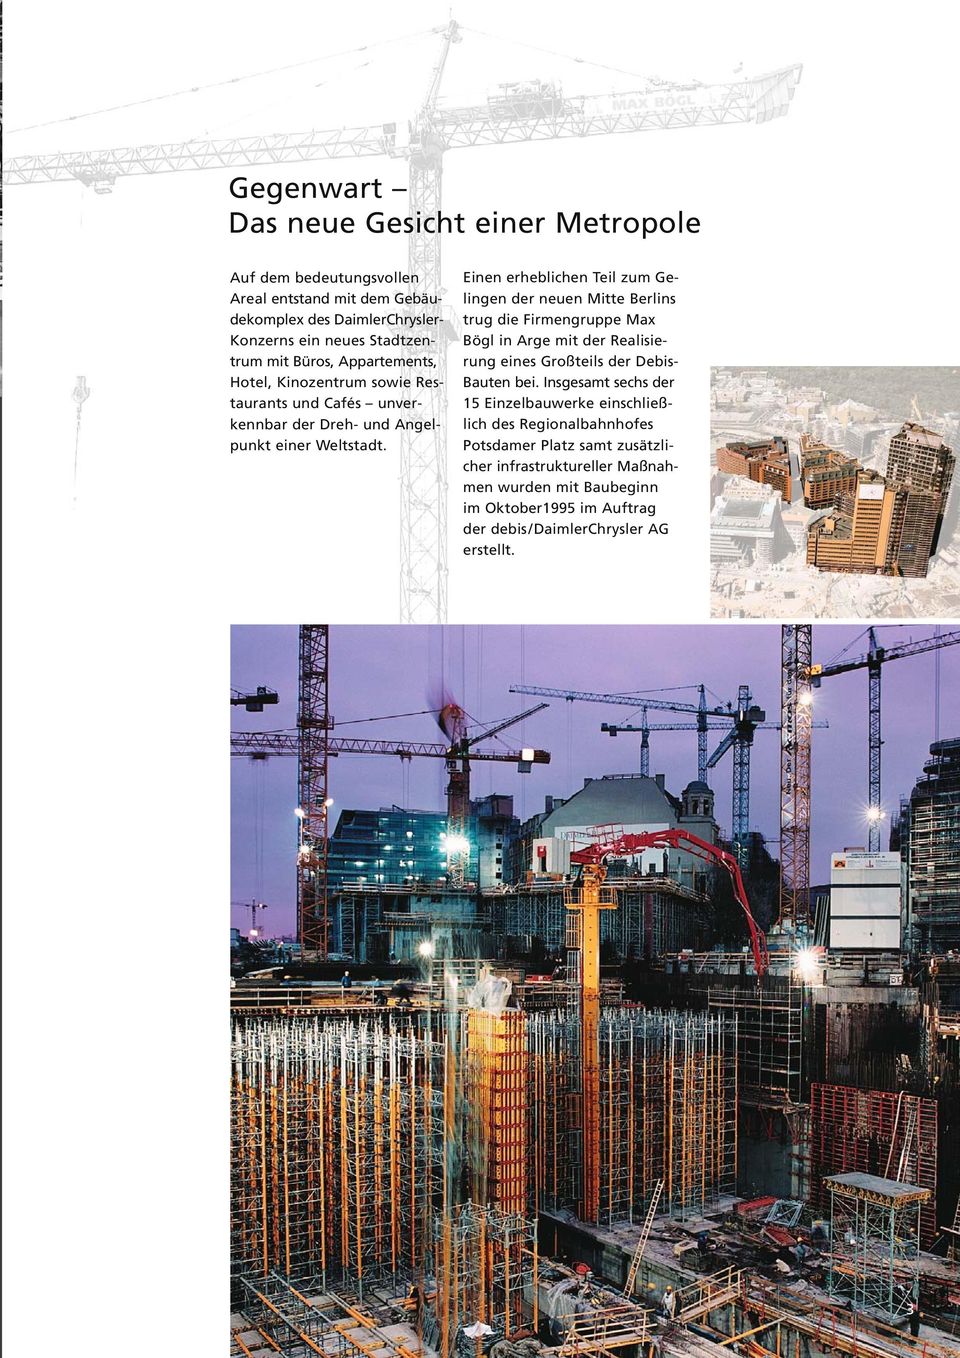 Einen erheblichen Teil zum Gelingen der neuen Mitte Berlins trug die Firmengruppe Max Bögl in Arge mit der Realisierung eines Großteils der Debis- Bauten bei.